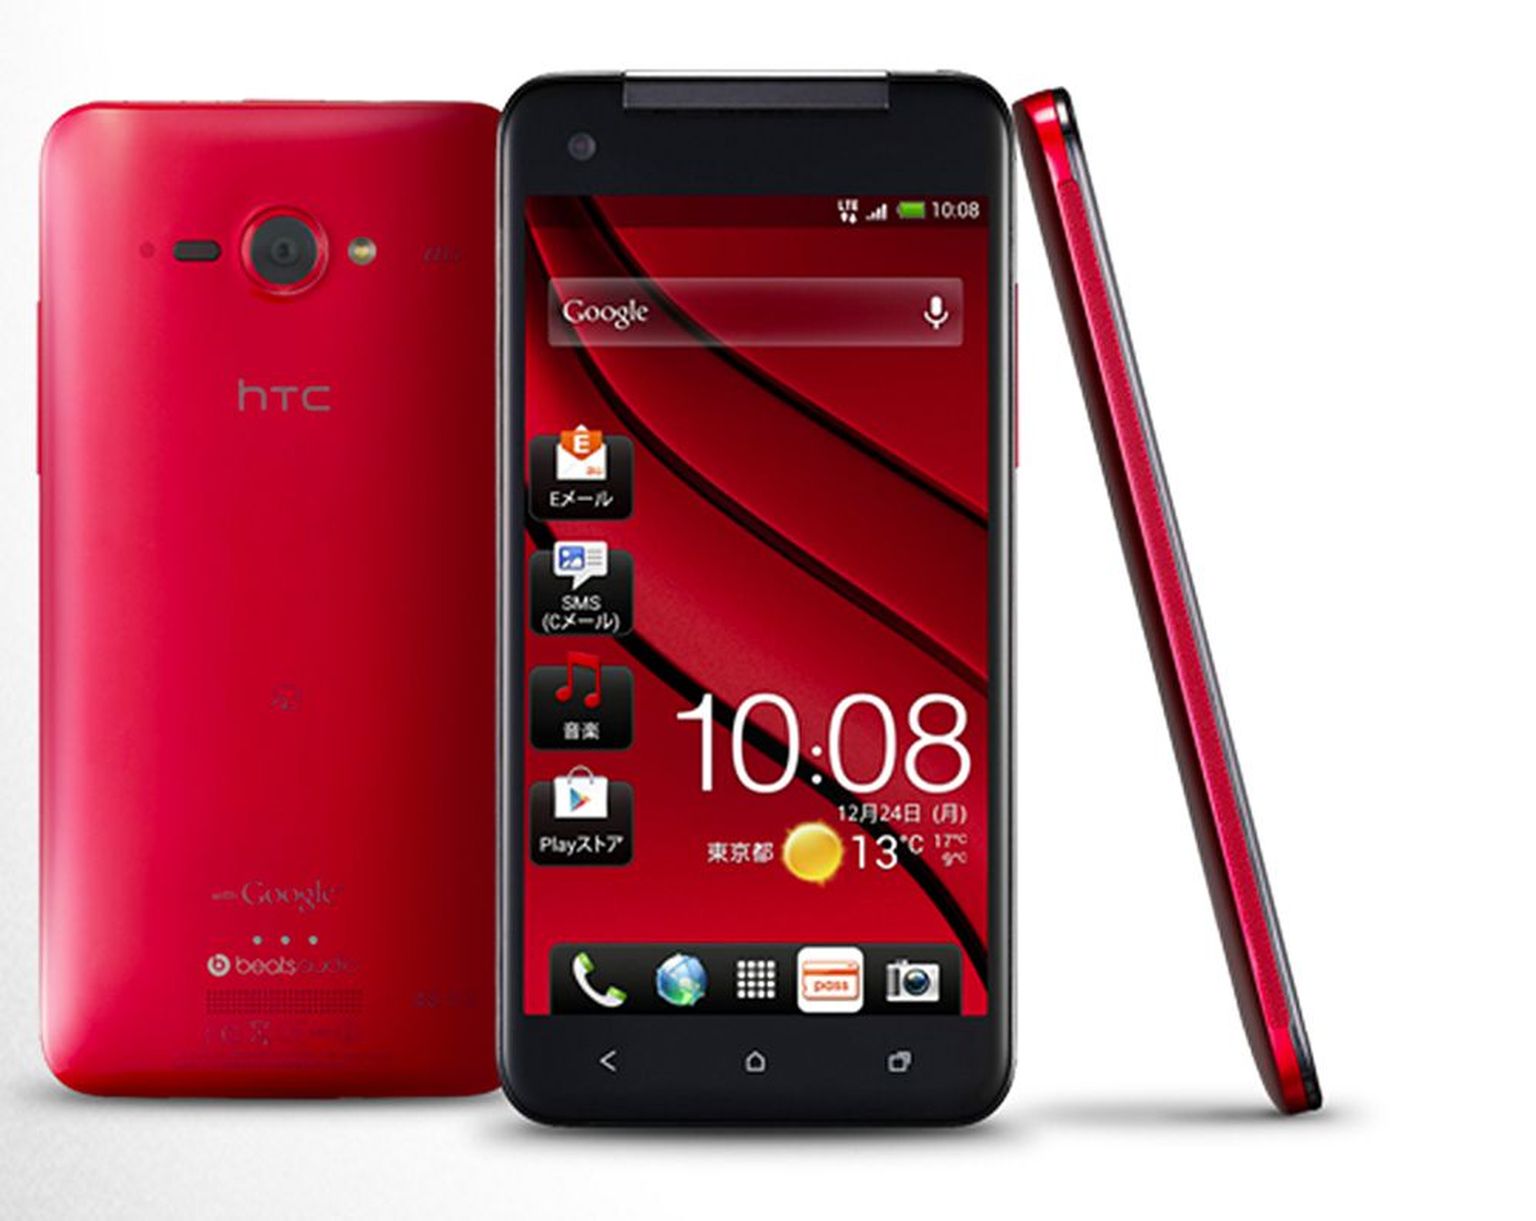 HTC J Butterfly on kõrgresolutsioonekraaniga (1080 ppi) nutitelefon, mida esialgu müüakse vaid Jaapanis.